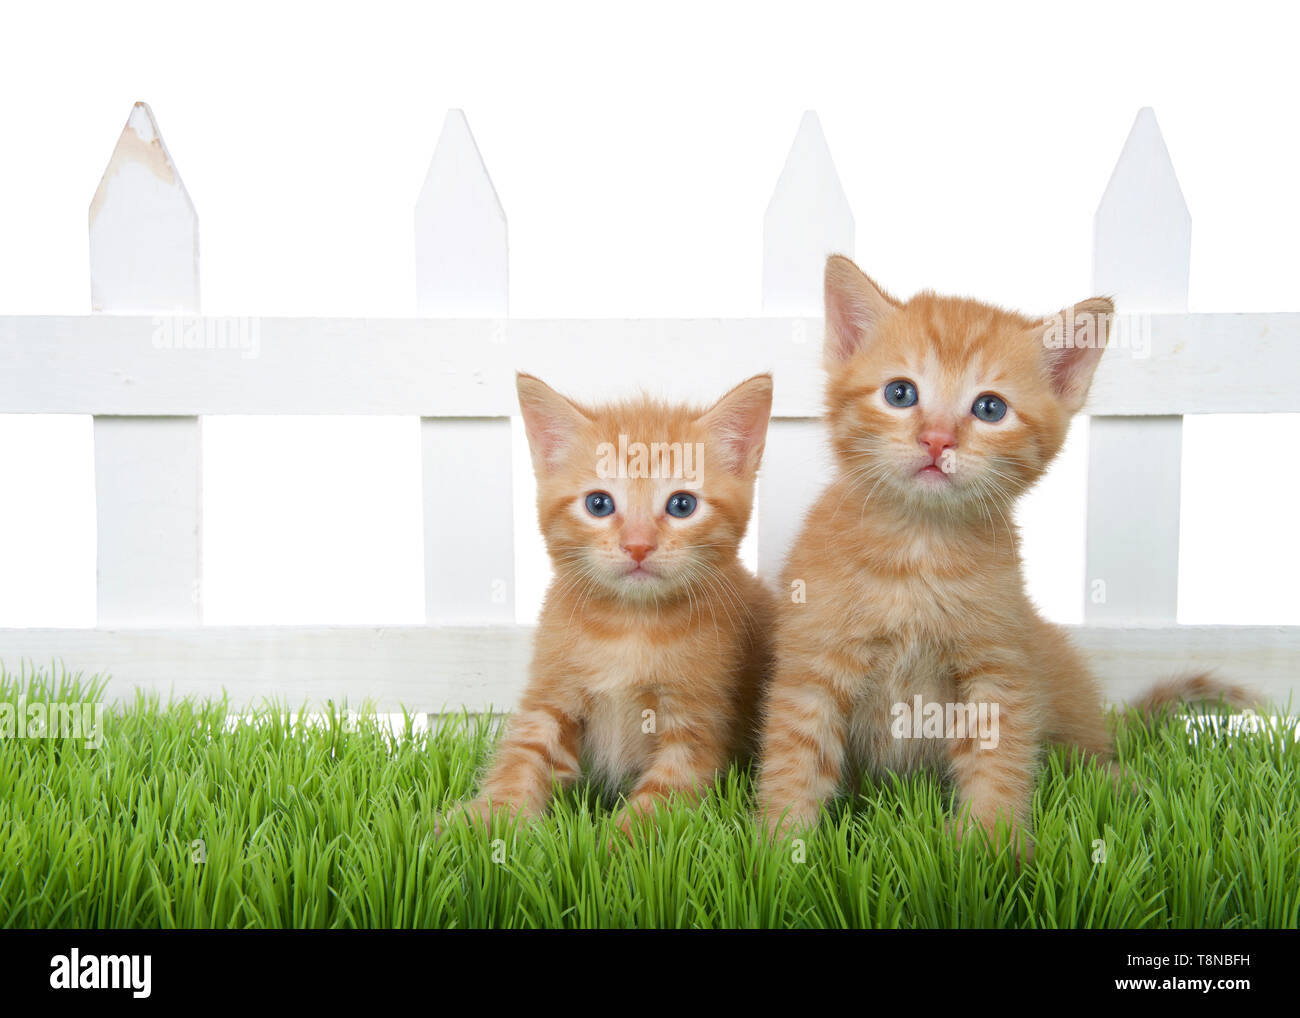 Bạn có muốn chìm đắm trong cảnh tượng yên tĩnh và đáng yêu của mèo cam tabby đang ngồi trên cỏ? Hãy xem ngay hình ảnh này!